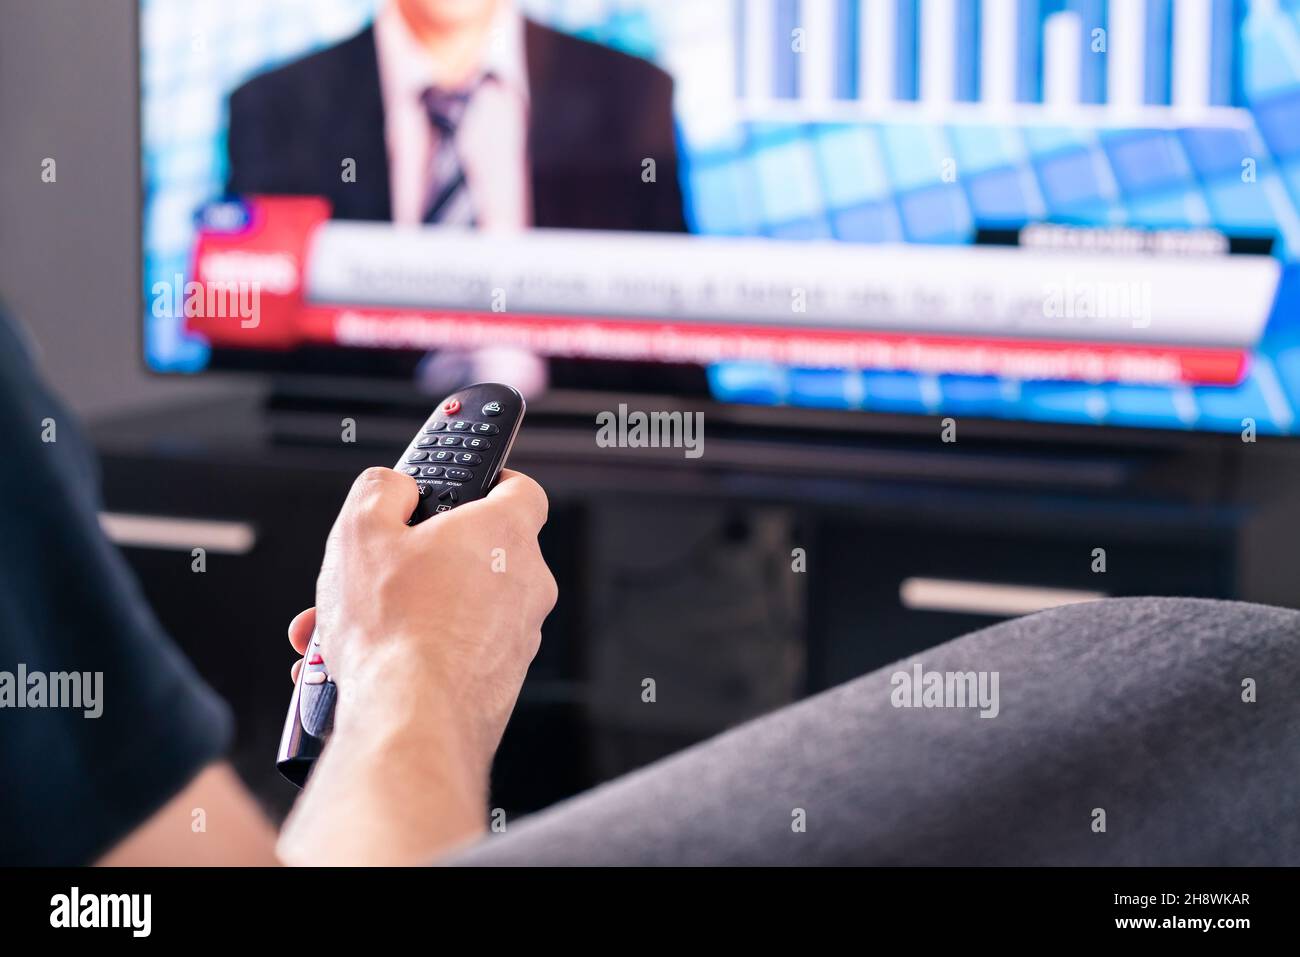 Aktuelle Nachrichten im fernsehen. Mann, der live Fernsehsendung ansieht. Covid19, Coronavirus und medizinische Informationen oder Wahlreporter. Stockfoto